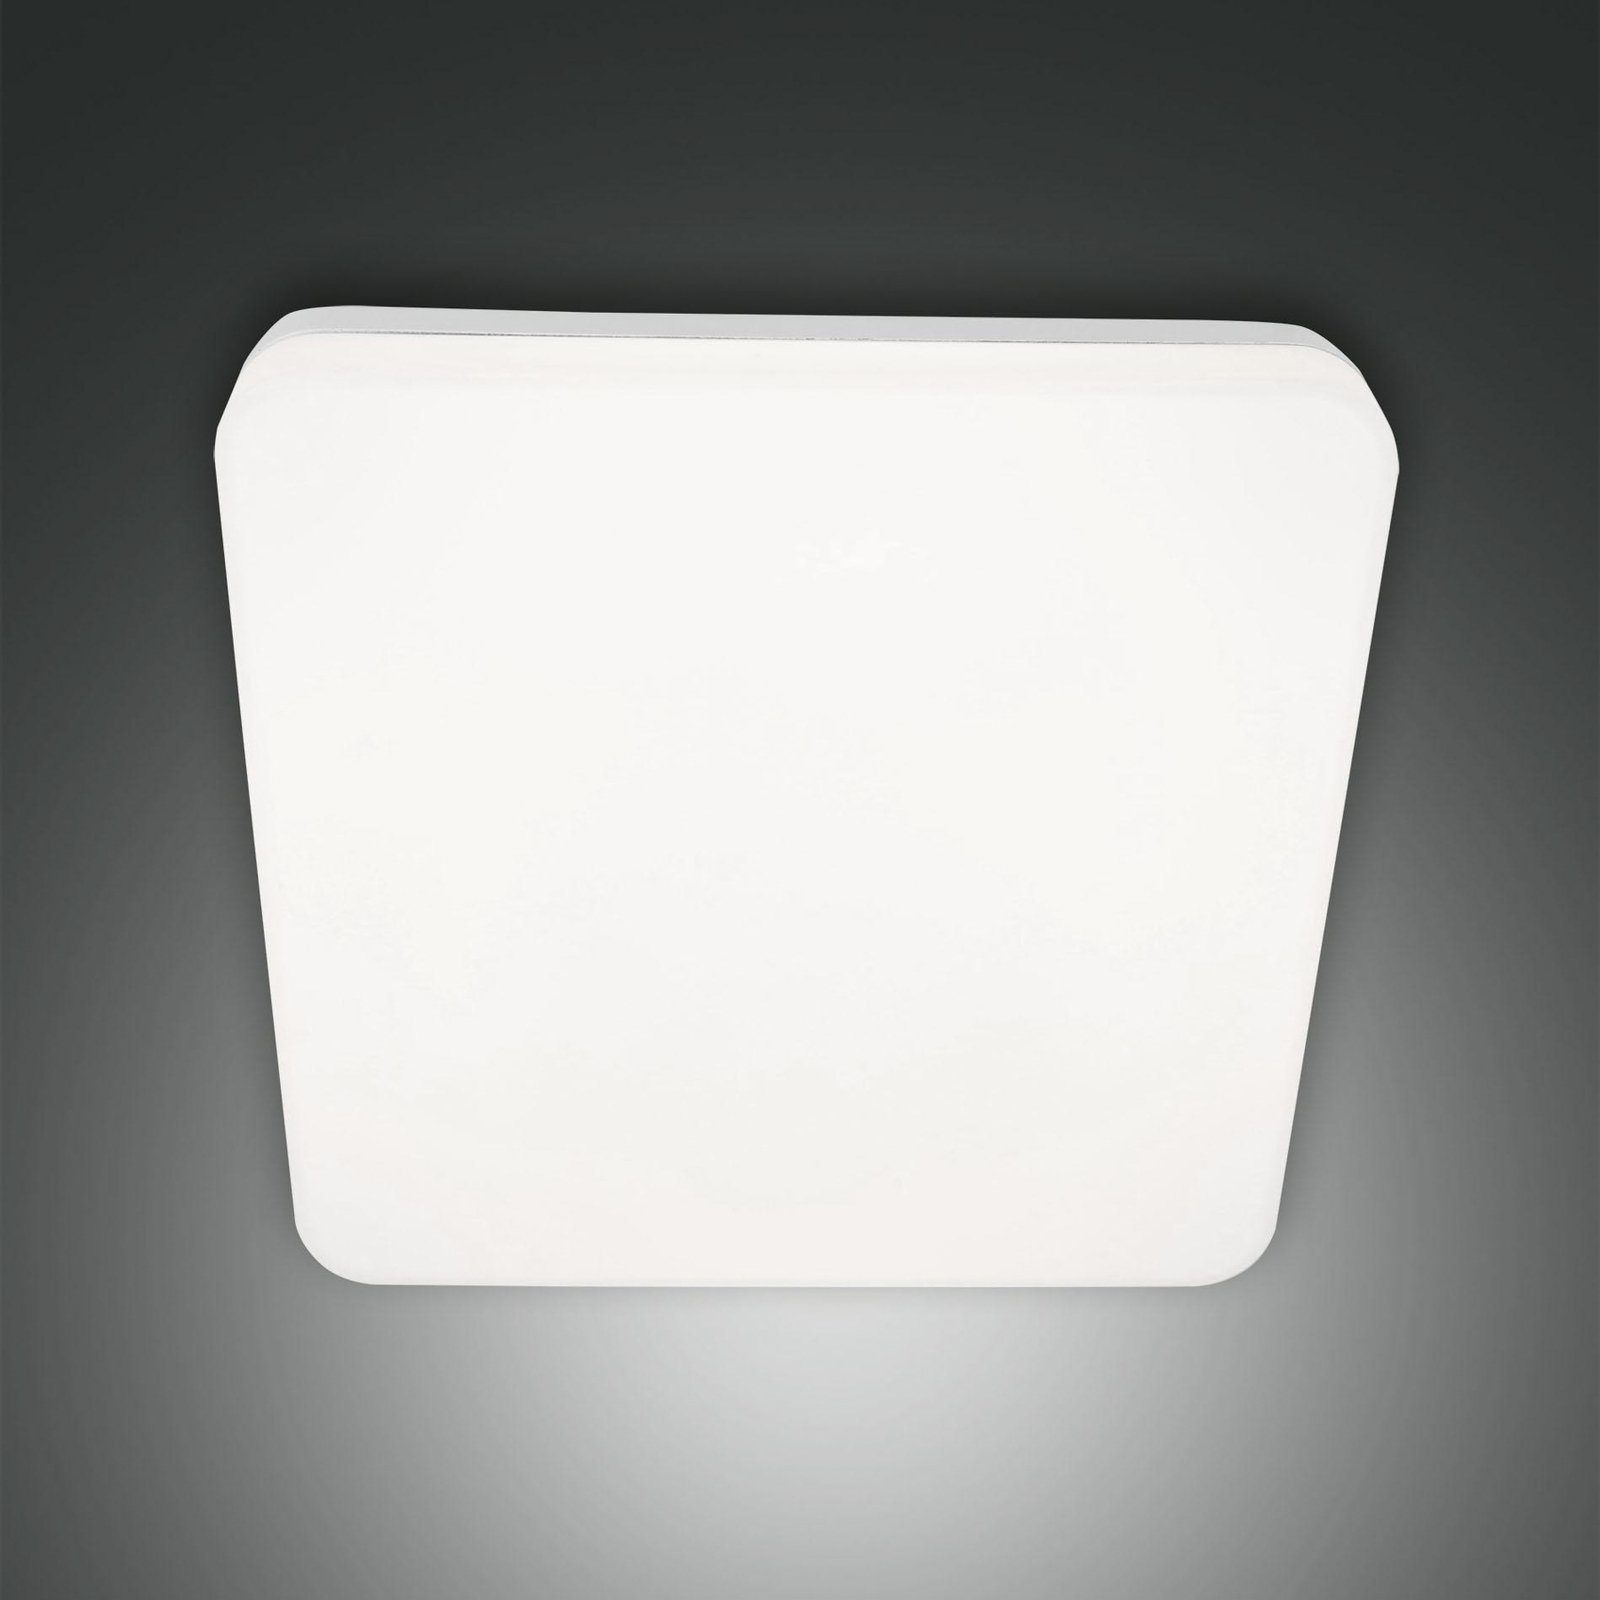 Folk LED outdoor ceiling light, sensor, 28 x 28 cm, white, IP65